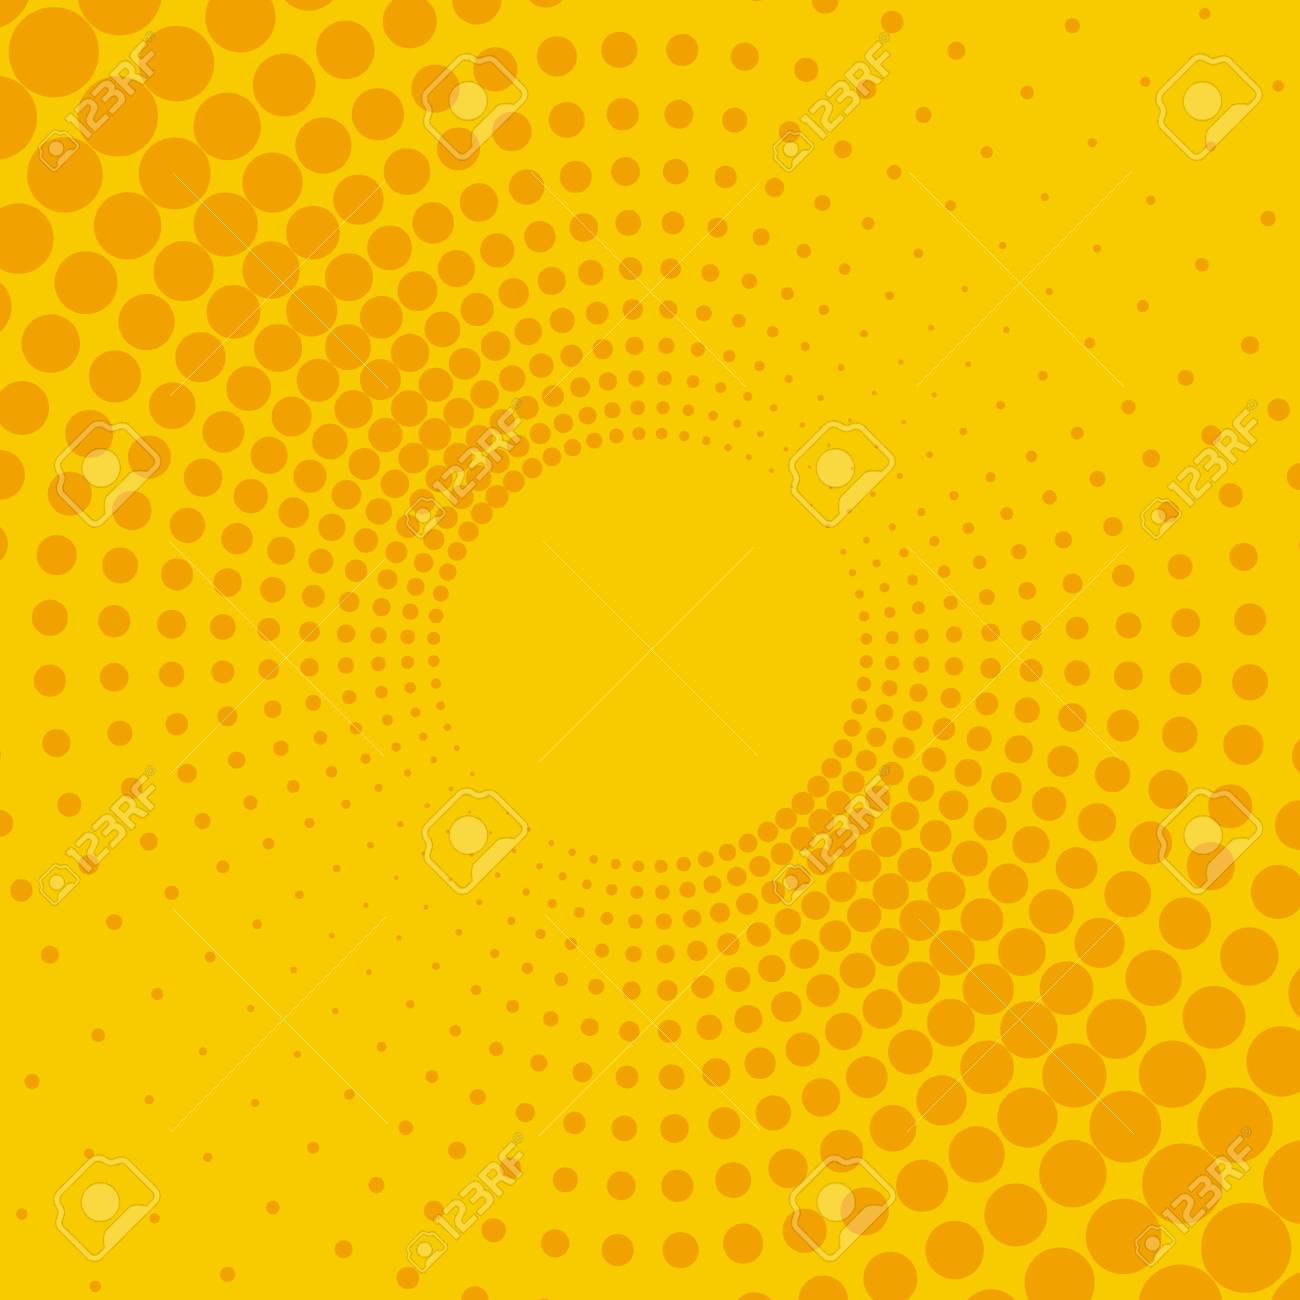 Yellow And Orange Background Isolated On Plain Background Royalty